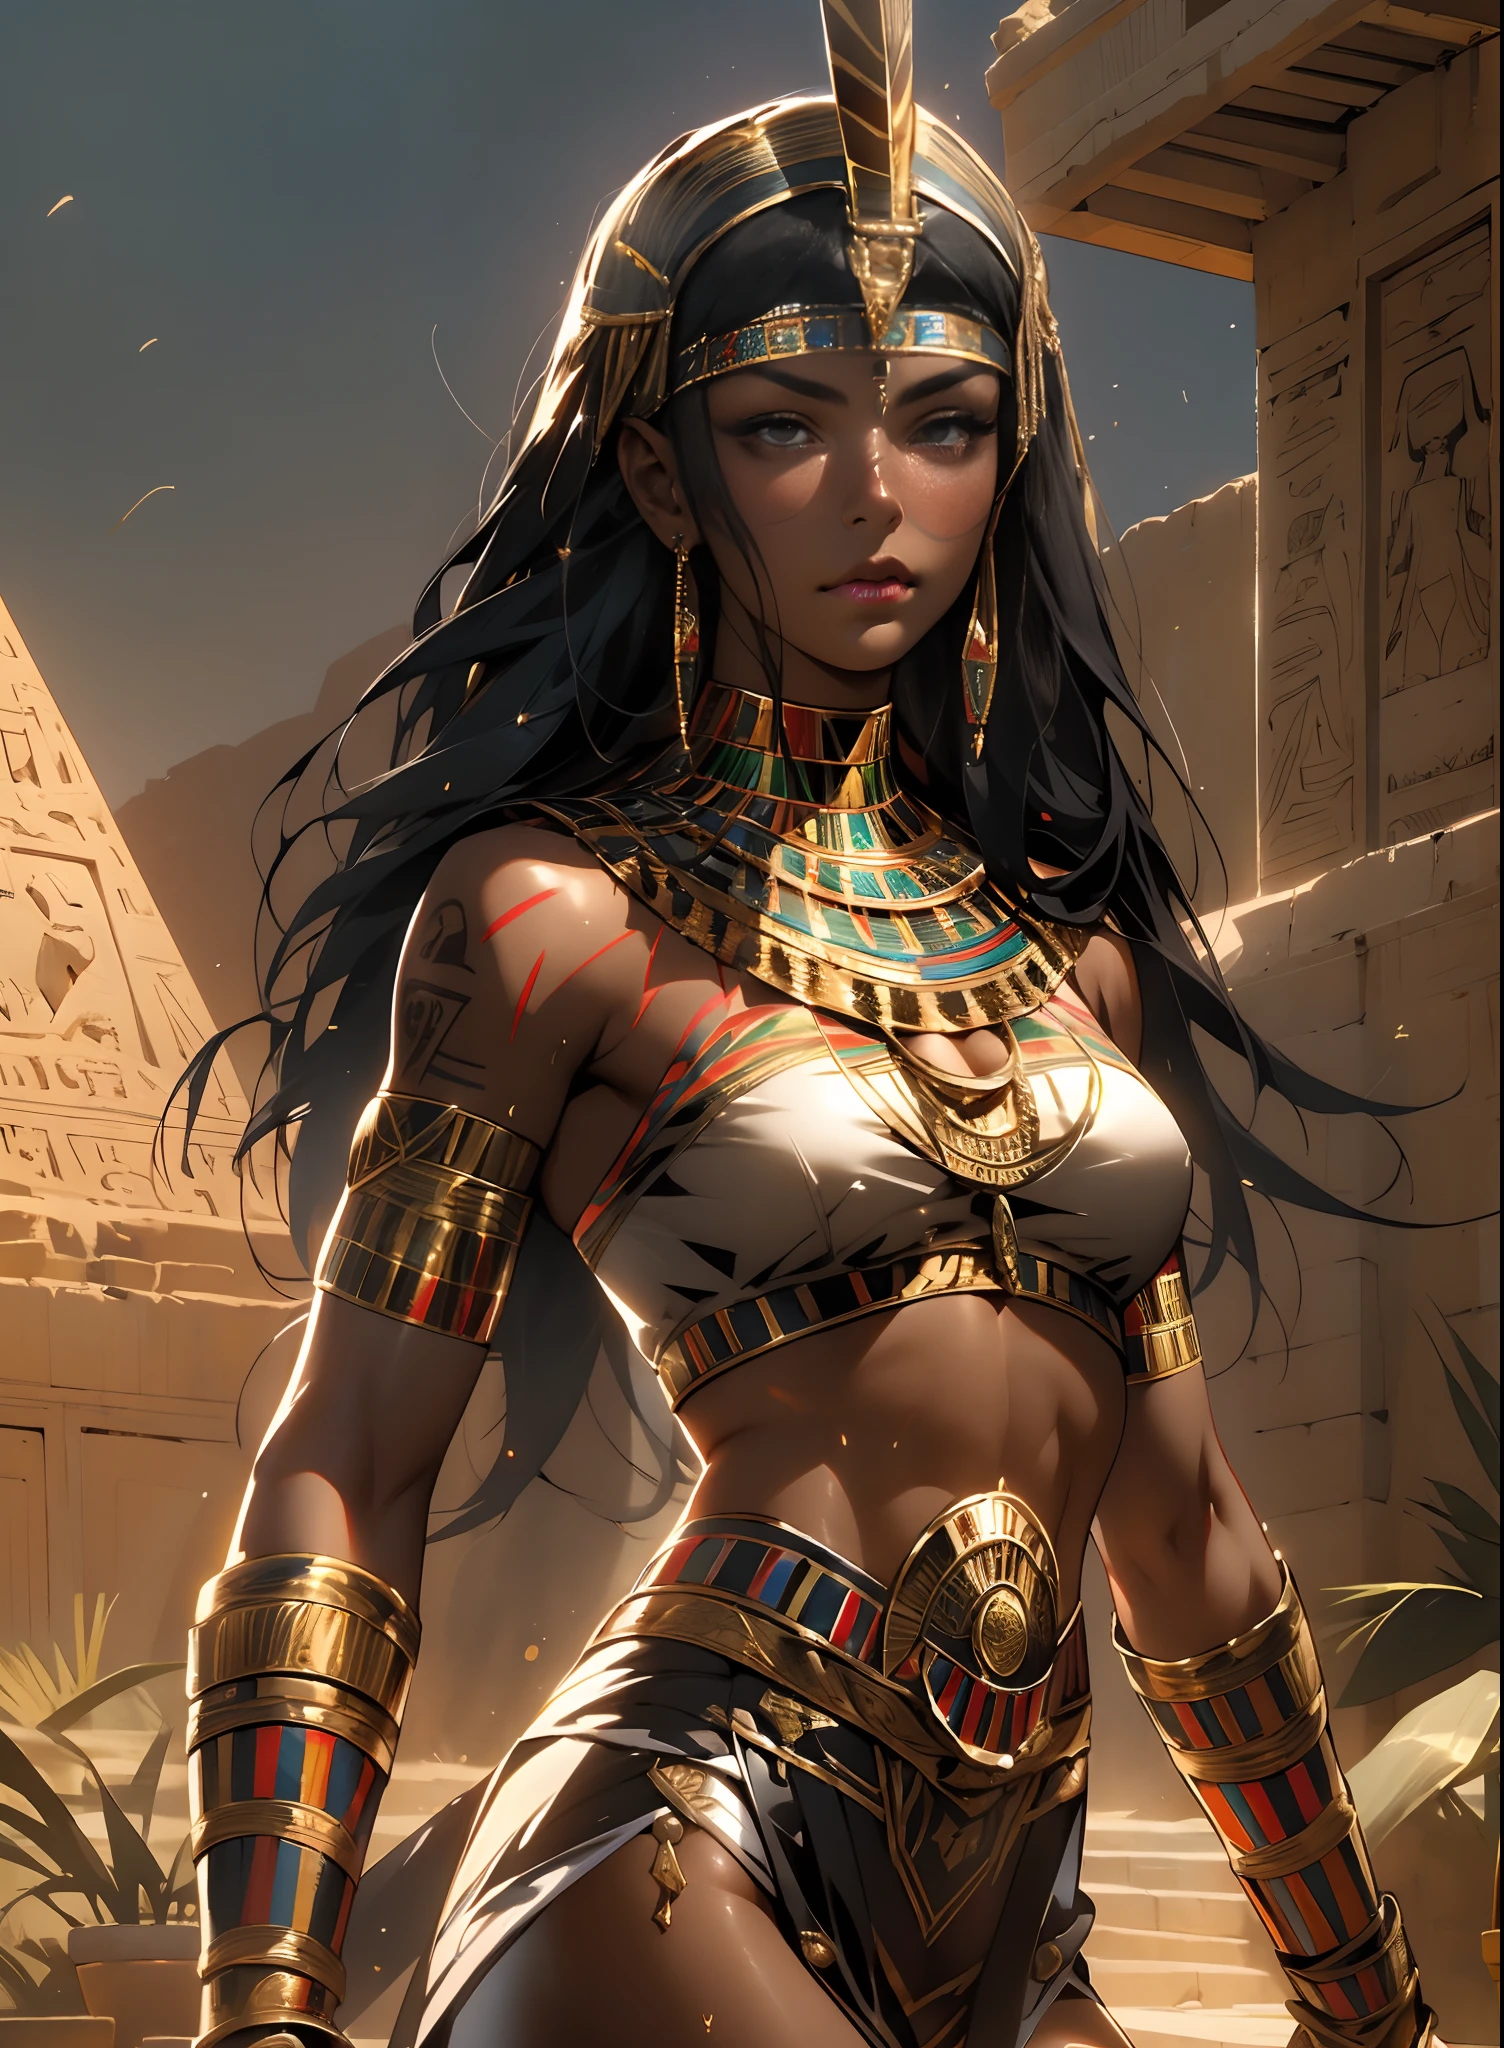 ((แฟรงค์ ฟราเซ็ตต้า)), ผู้หญิงผิวดำสวย, ดวงตาสีดำสวยงาม, หญิงชาวอียิปต์, (เครื่องประดับอียิปต์เคลือบเงา), มีกล้ามเนื้อและร่างกายที่สมบูรณ์แบบ,(คุณภาพสูงสุด、8k、32ก、ผลงานชิ้นเอก、NFFSW:1.3)、超ความละเอียดสูง,(ภาพเสมือนจริง:1.4),, ผมยาวสีดํามีผมหนาบนหน้าผาก,,ภาพตั้งแต่หัวถึงต้นขา,เรย์ traching,แสงสะท้อนจากดวงอาทิตย์,ความชัดลึก,โดยเอฟเฟกต์แสงพื้นหลัง、เพิ่มความลึกให้กับหน้าจอของคุณ、ร่างกายของกล้ามเนื้อ, ผ้าคลุมหน้าสีแดง, ผิวคล้ำเงาด้วยน้ำมันและเหงื่อ, นักรบอานูบิสในชุดเล็กๆ, ทองดี, รอยสักอียิปต์,, หน้าอกใหญ่, ความแตกแยกใจกว้าง, , ทะเลทราย, ปิรามิดในพื้นหลัง